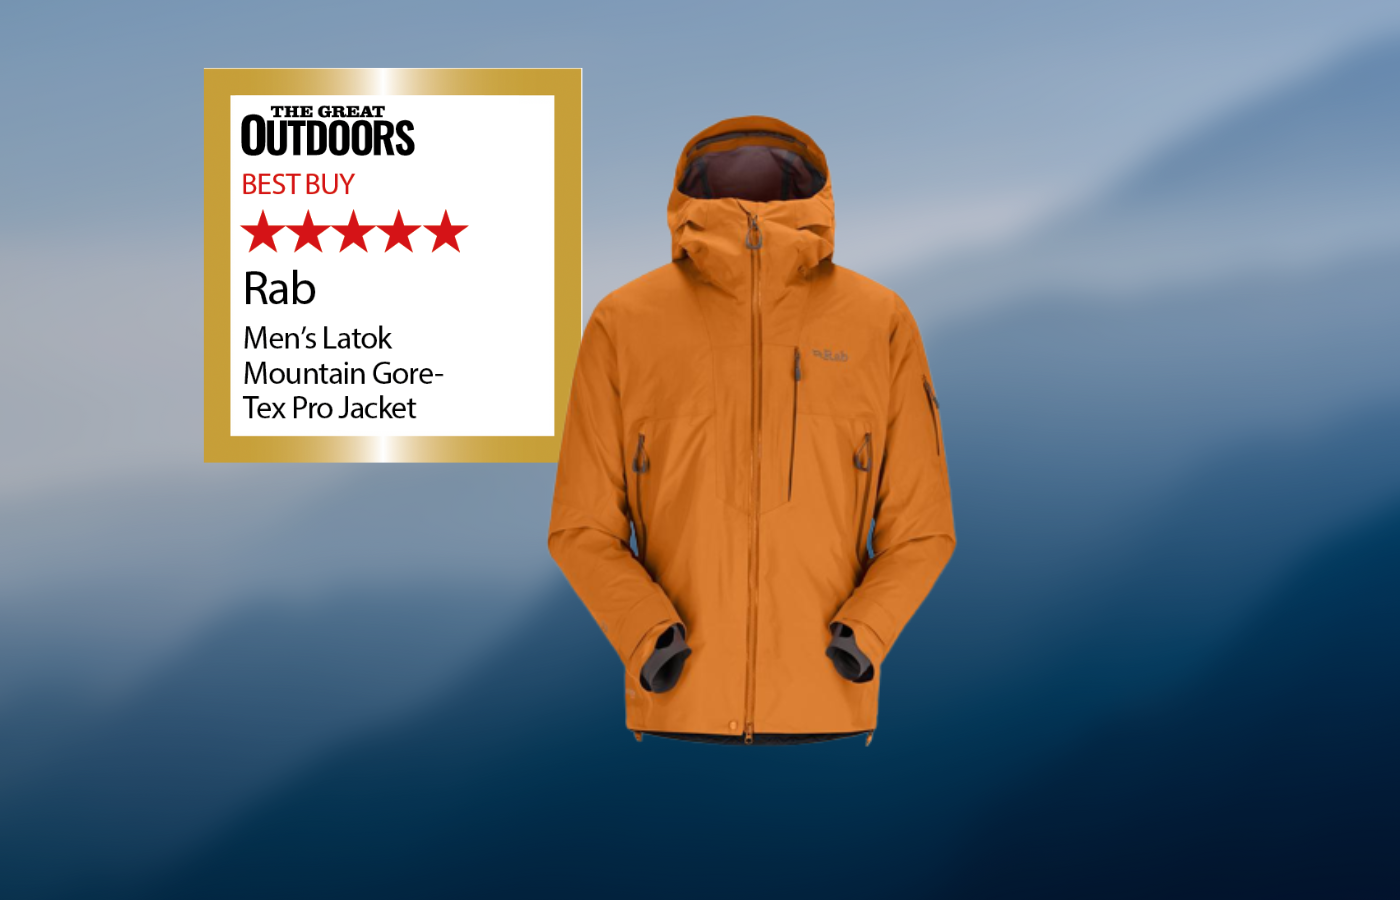 Rab Latok Mountain Gore-Tex Pro Jacket